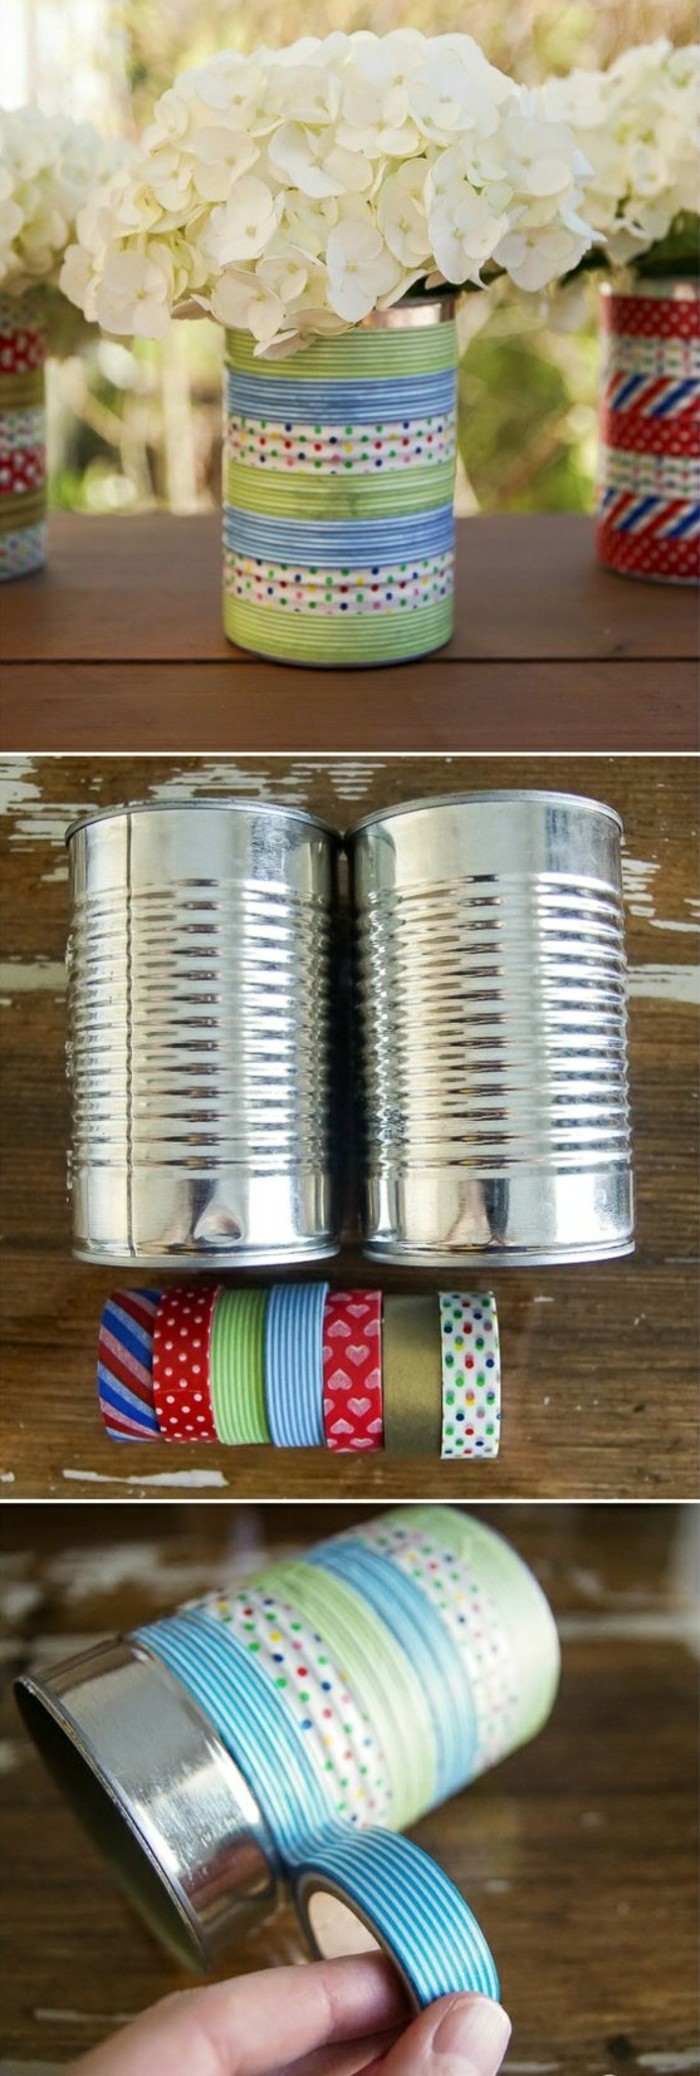 comment recycler les canettes, diy objet de déco fait avec boîte conserve et washi tape, modèle vase personnalisé